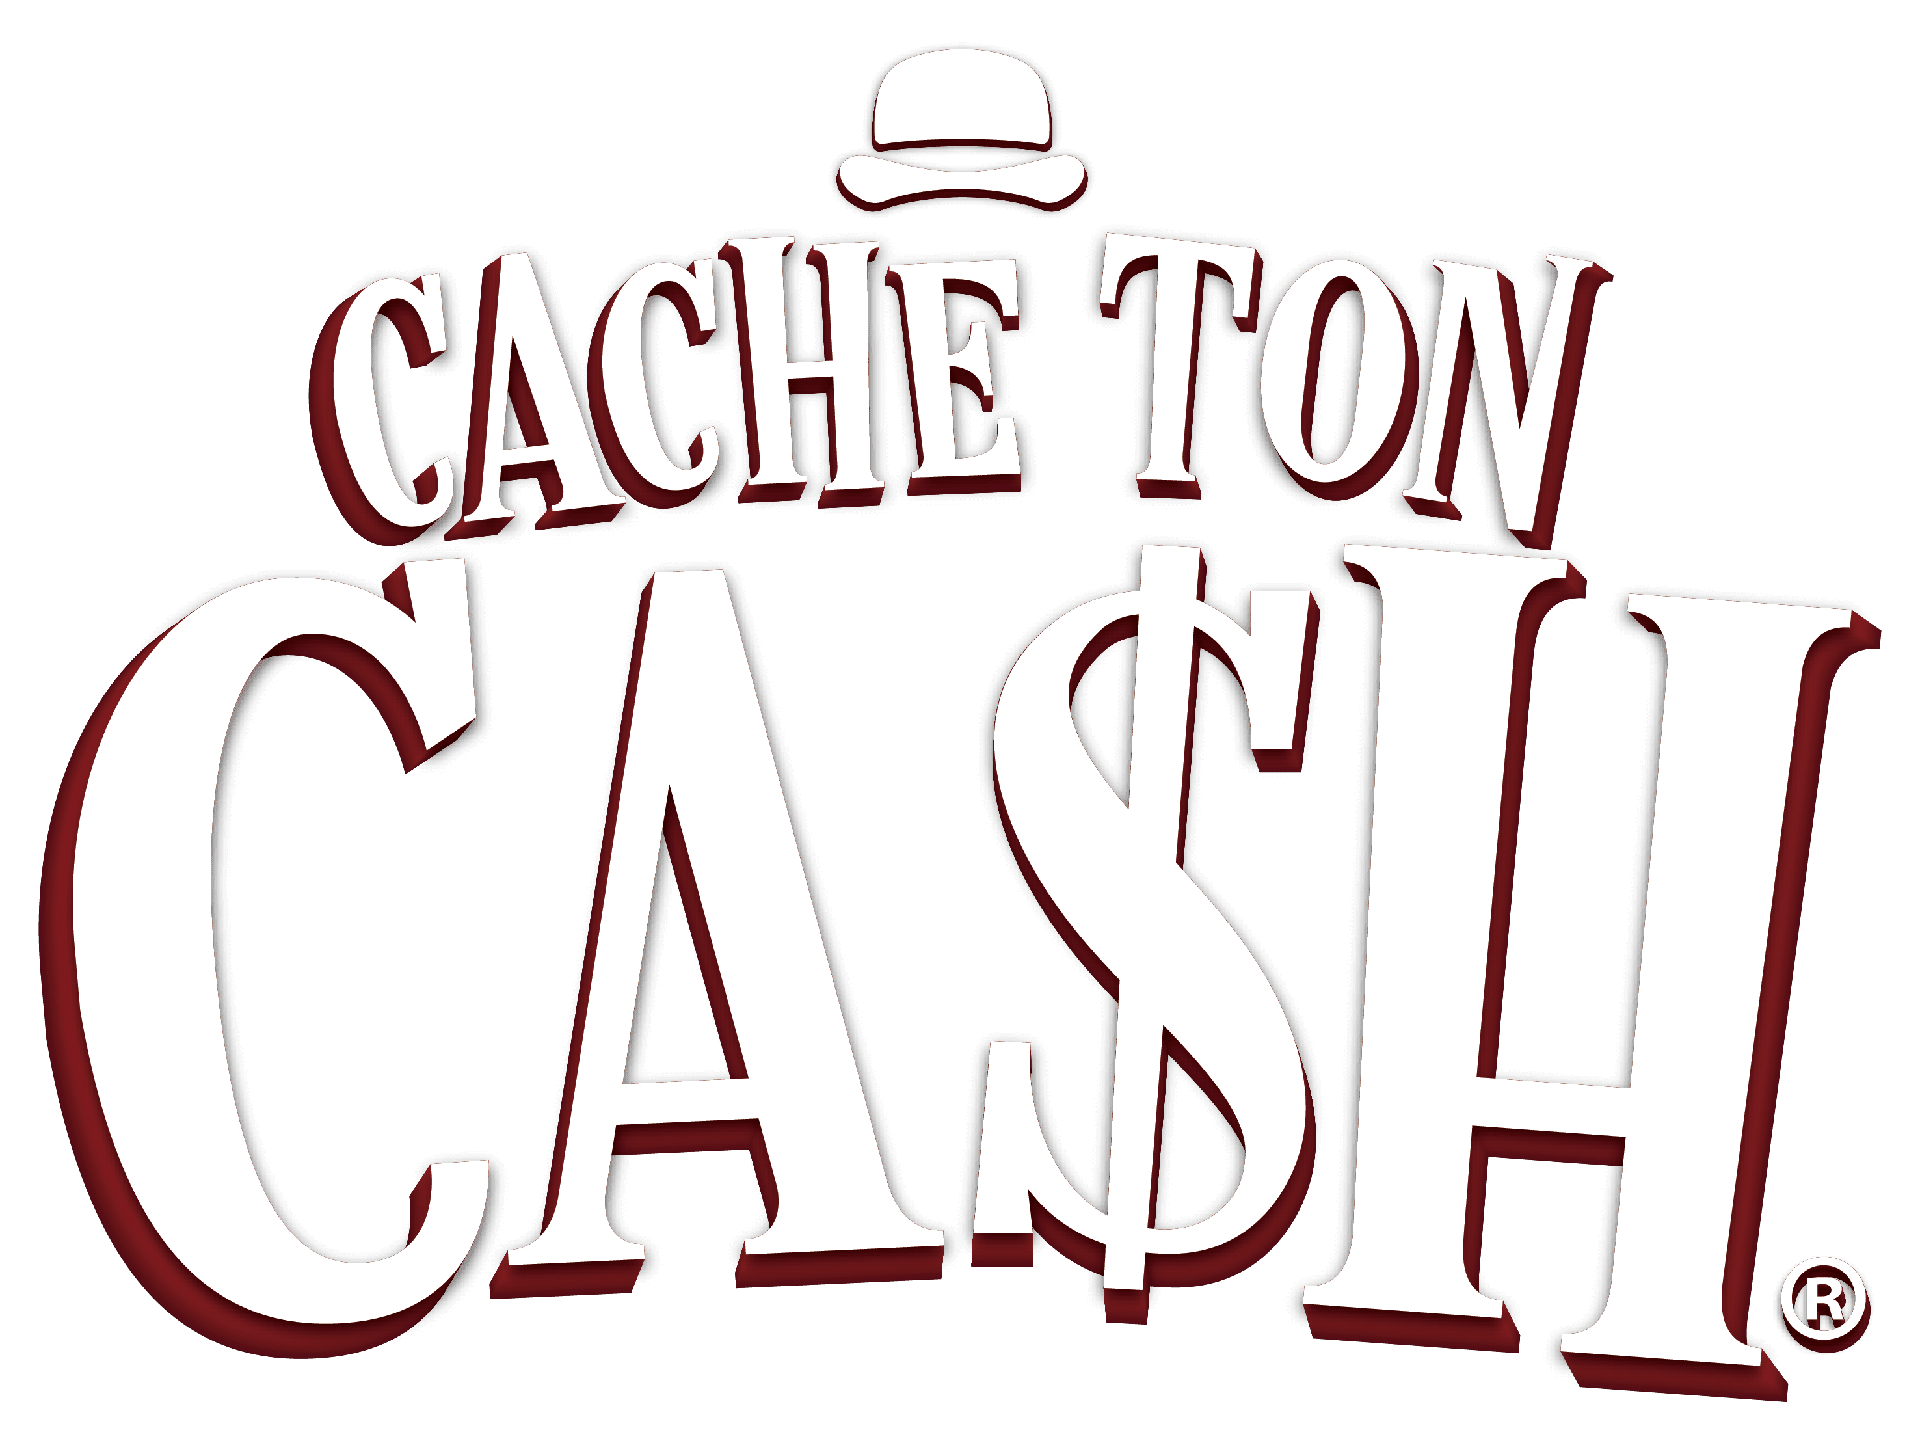 Cache ton cash, avis et chronique de jeu - Meeple QC